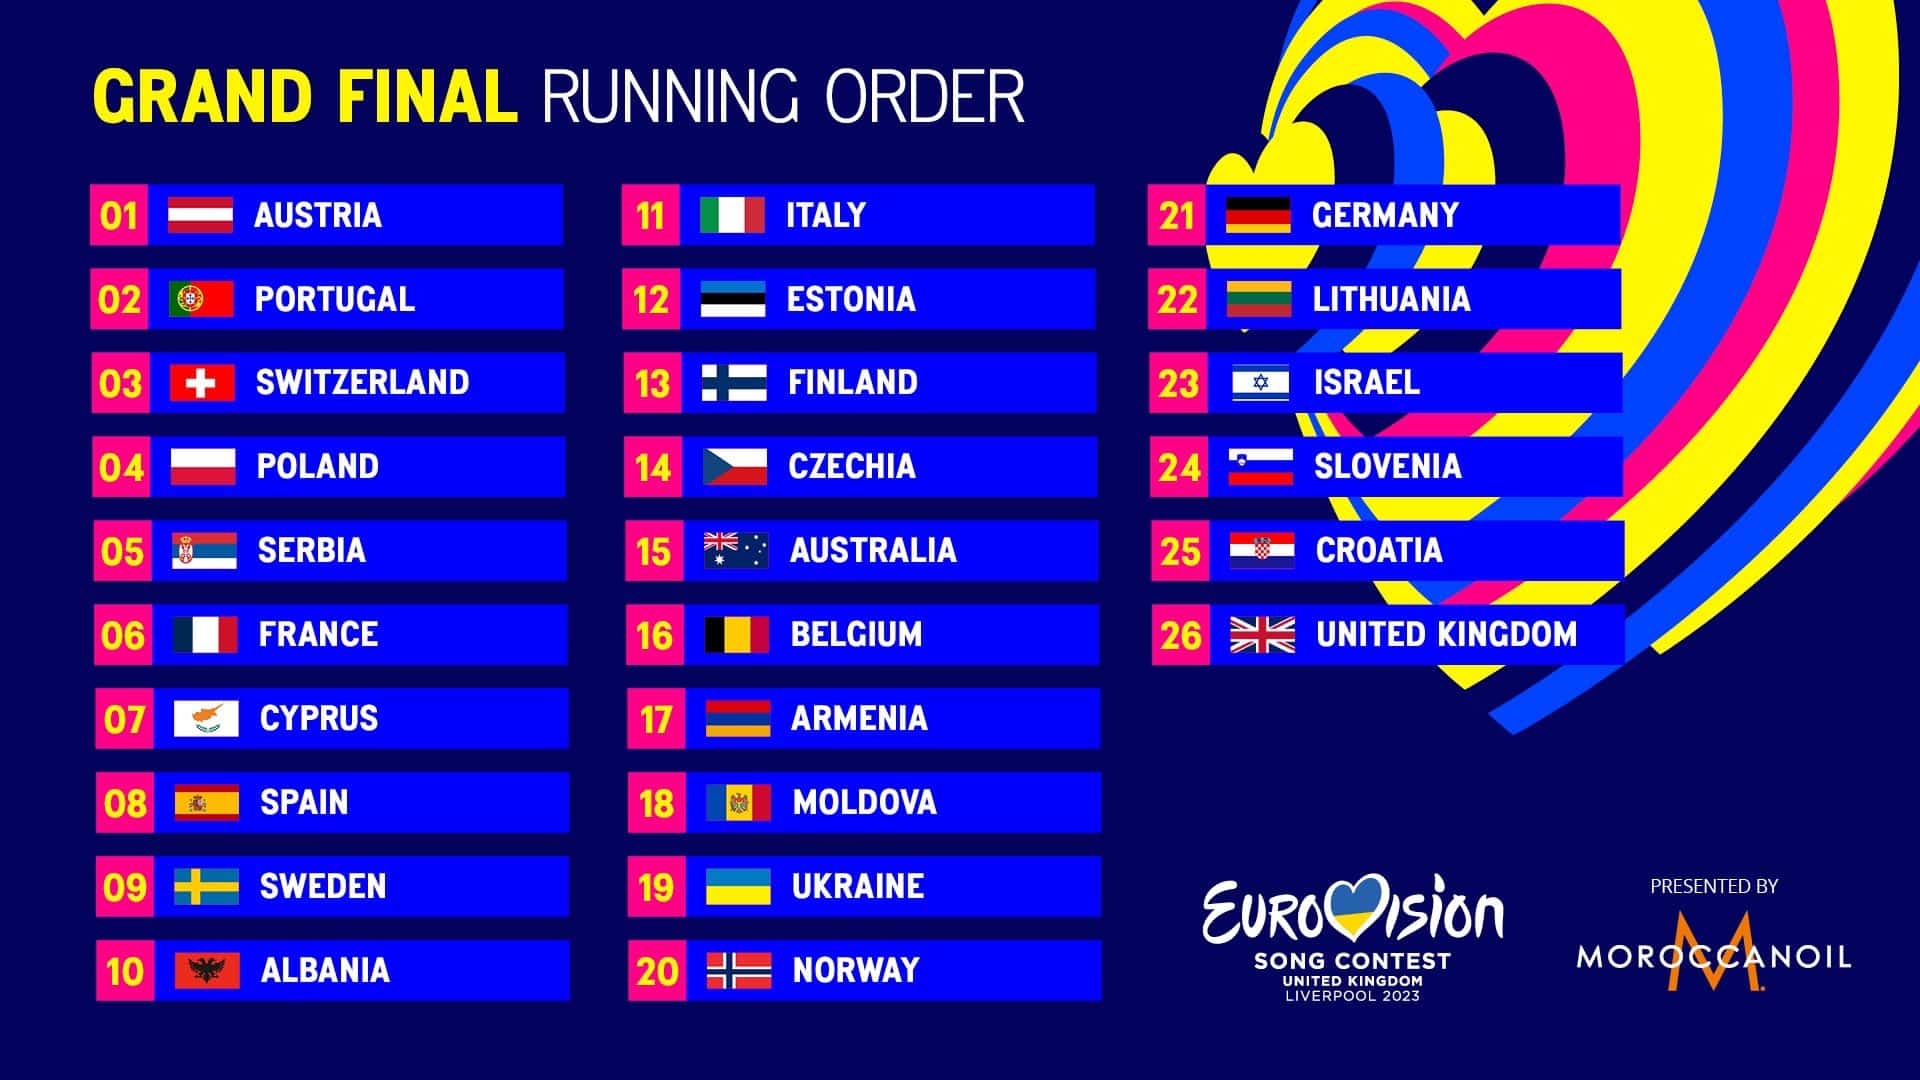 eurovision 2023 finalistas orden